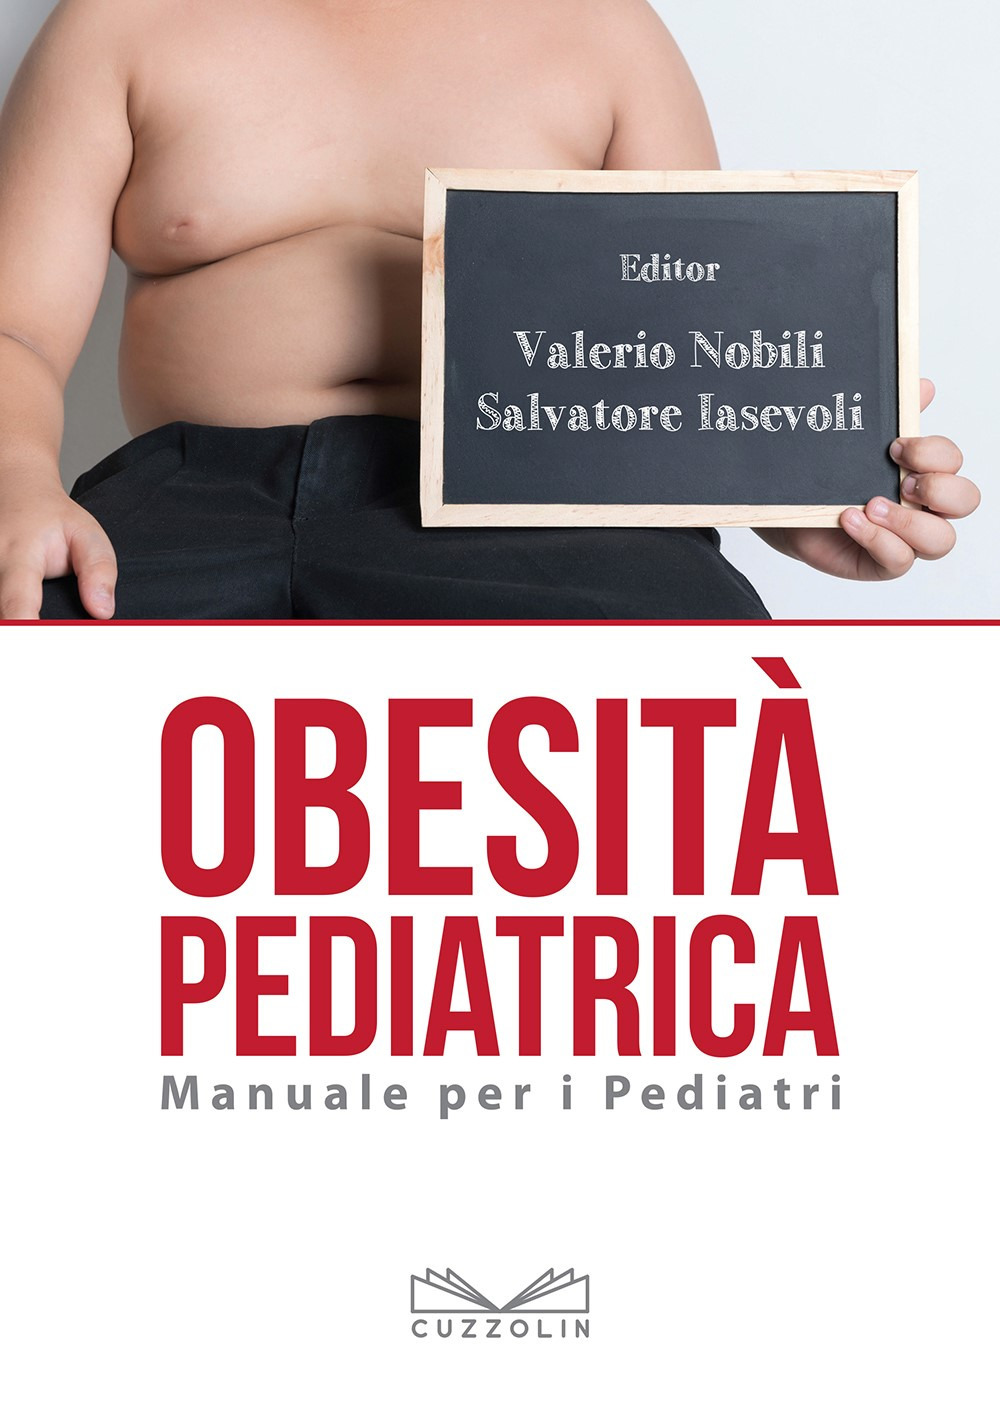 Obesità pediatrica. Manuale per i pediatri